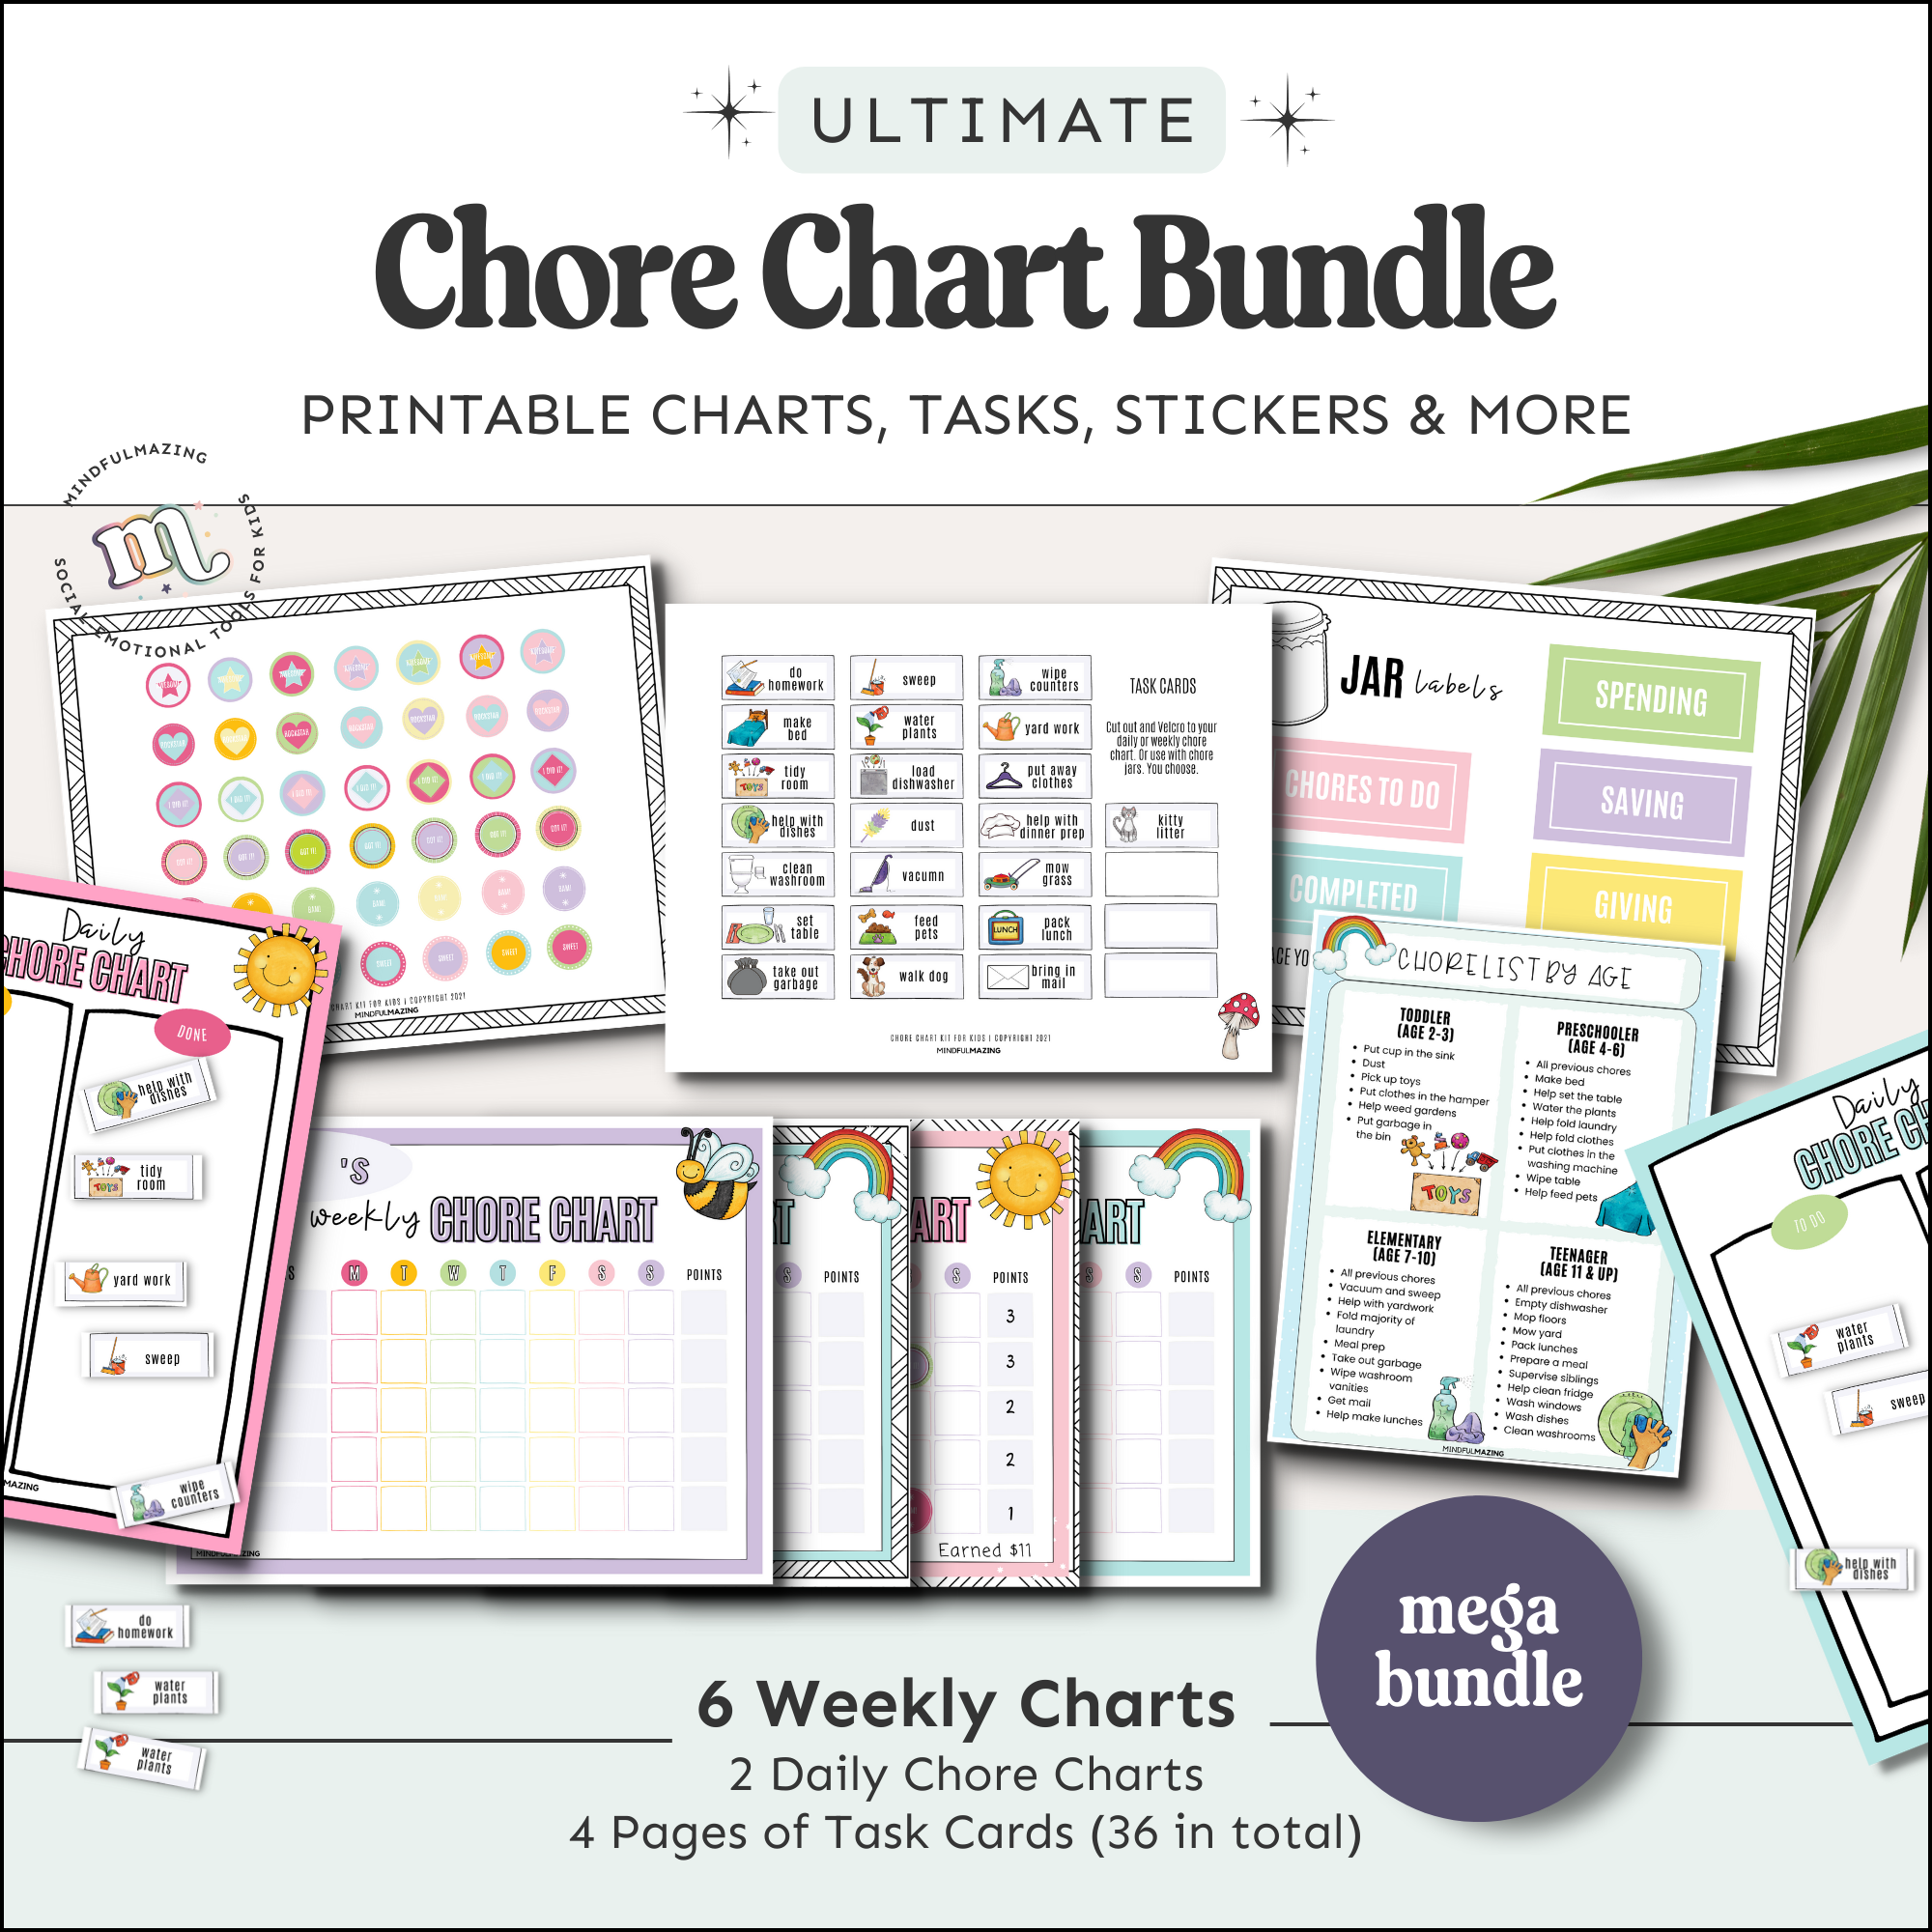 Chore Chart Bundle for Kids PDF (ages 2-10)